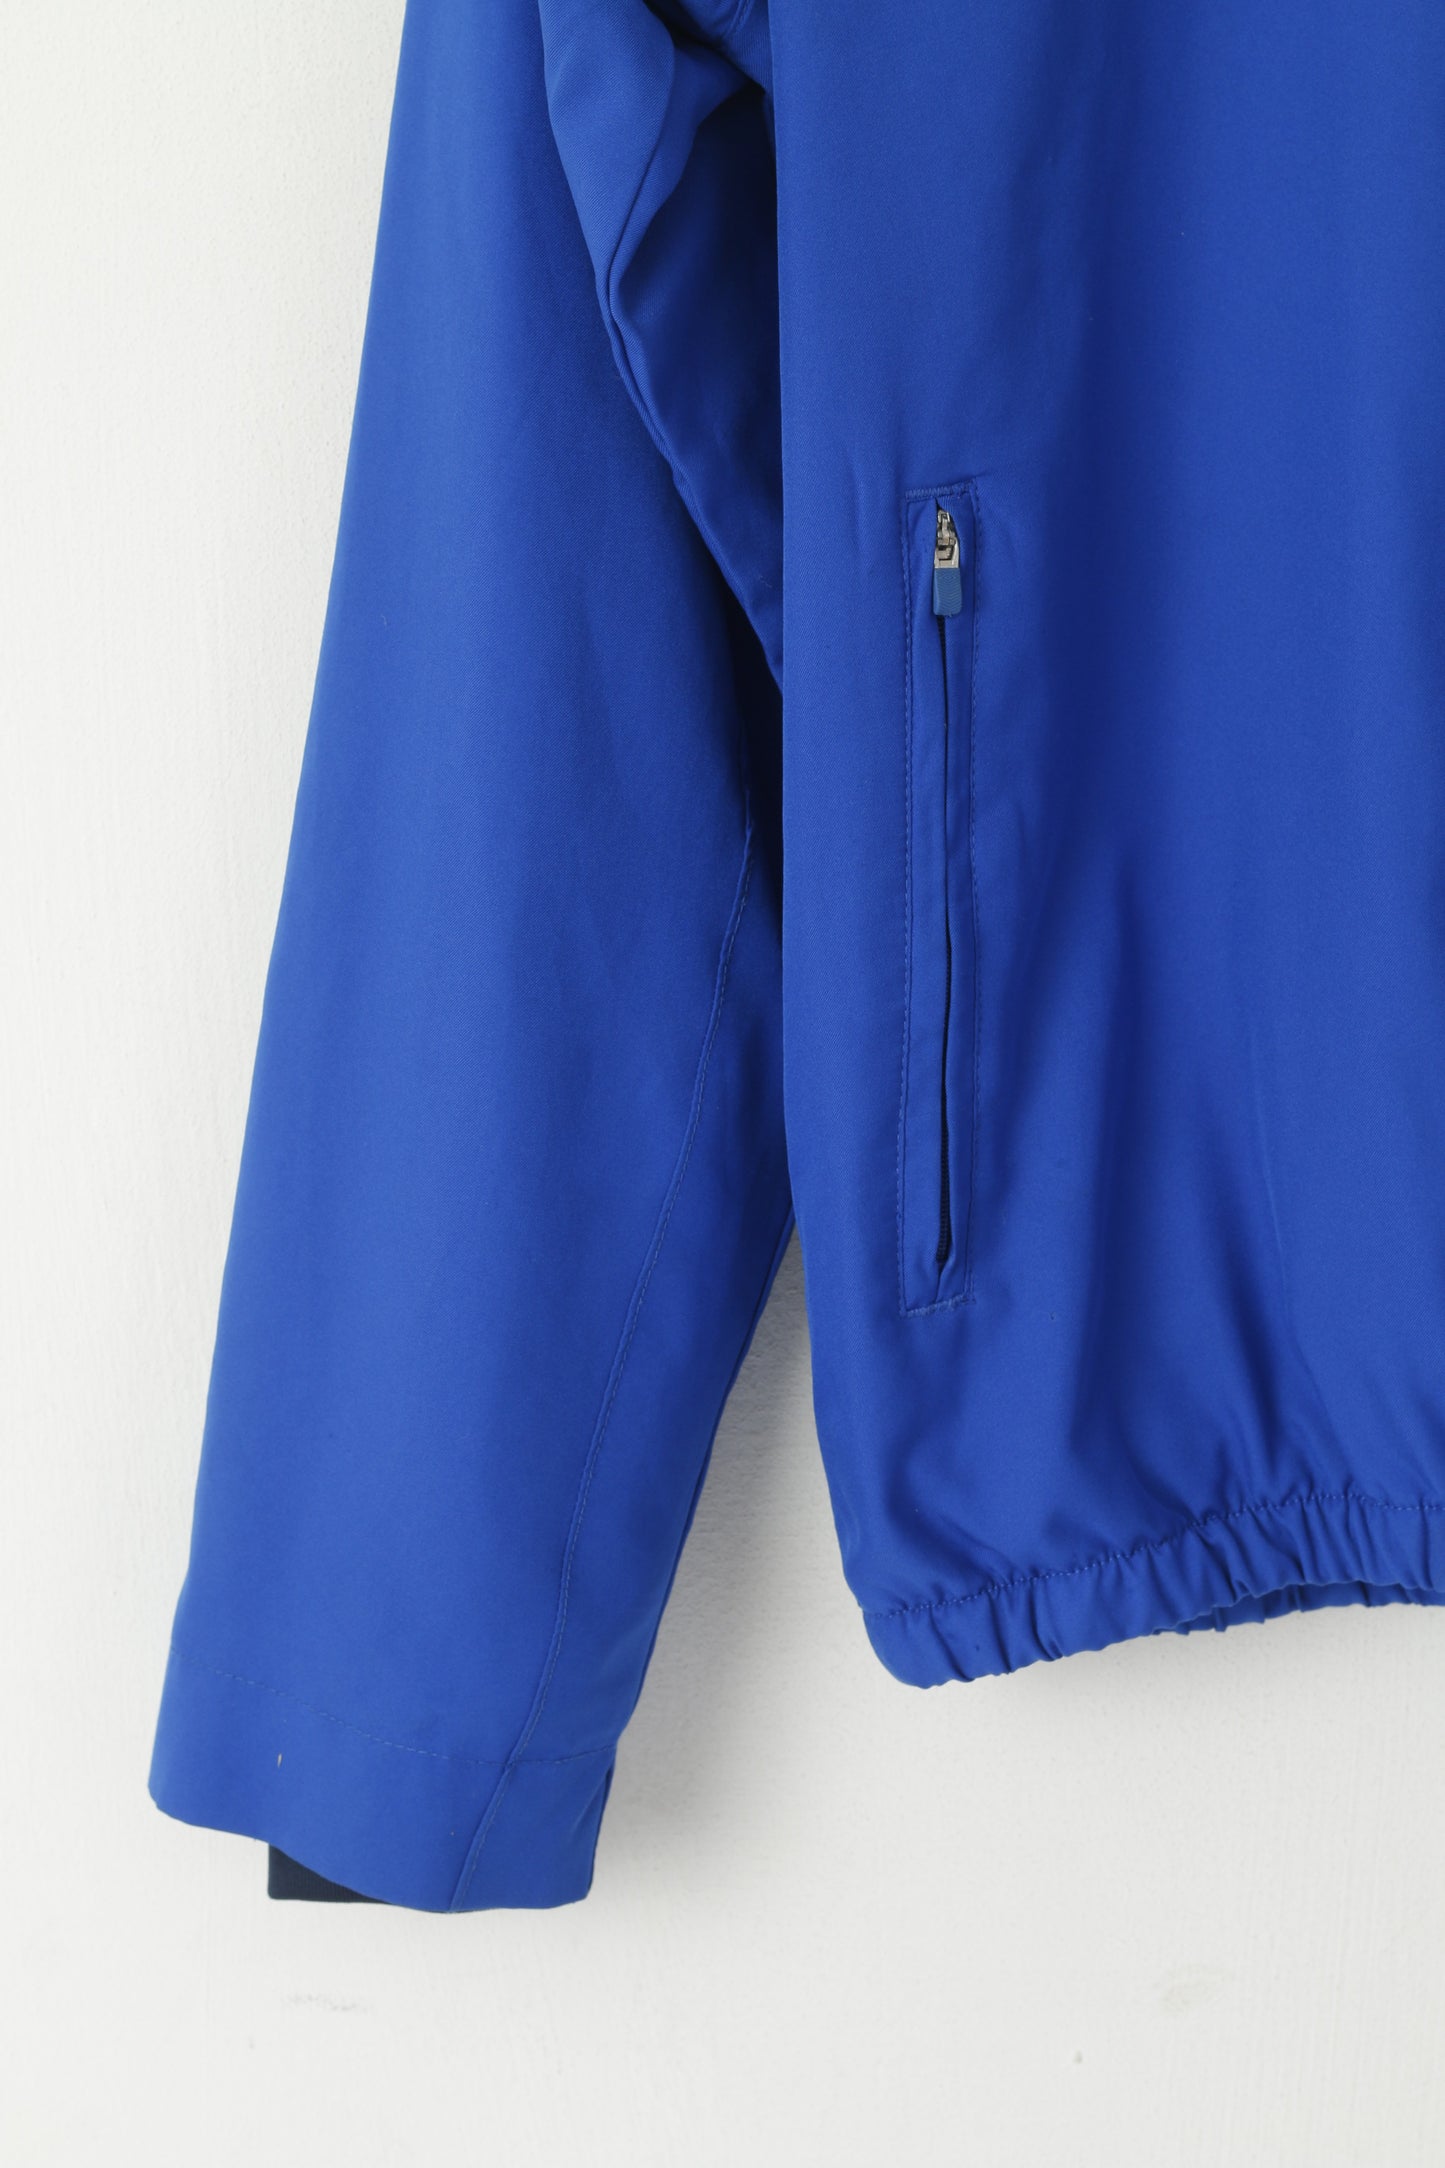 Umbro Men S Jacket Blue Lightweight Activewear Mesh Lined Zip Up Sport Training Top